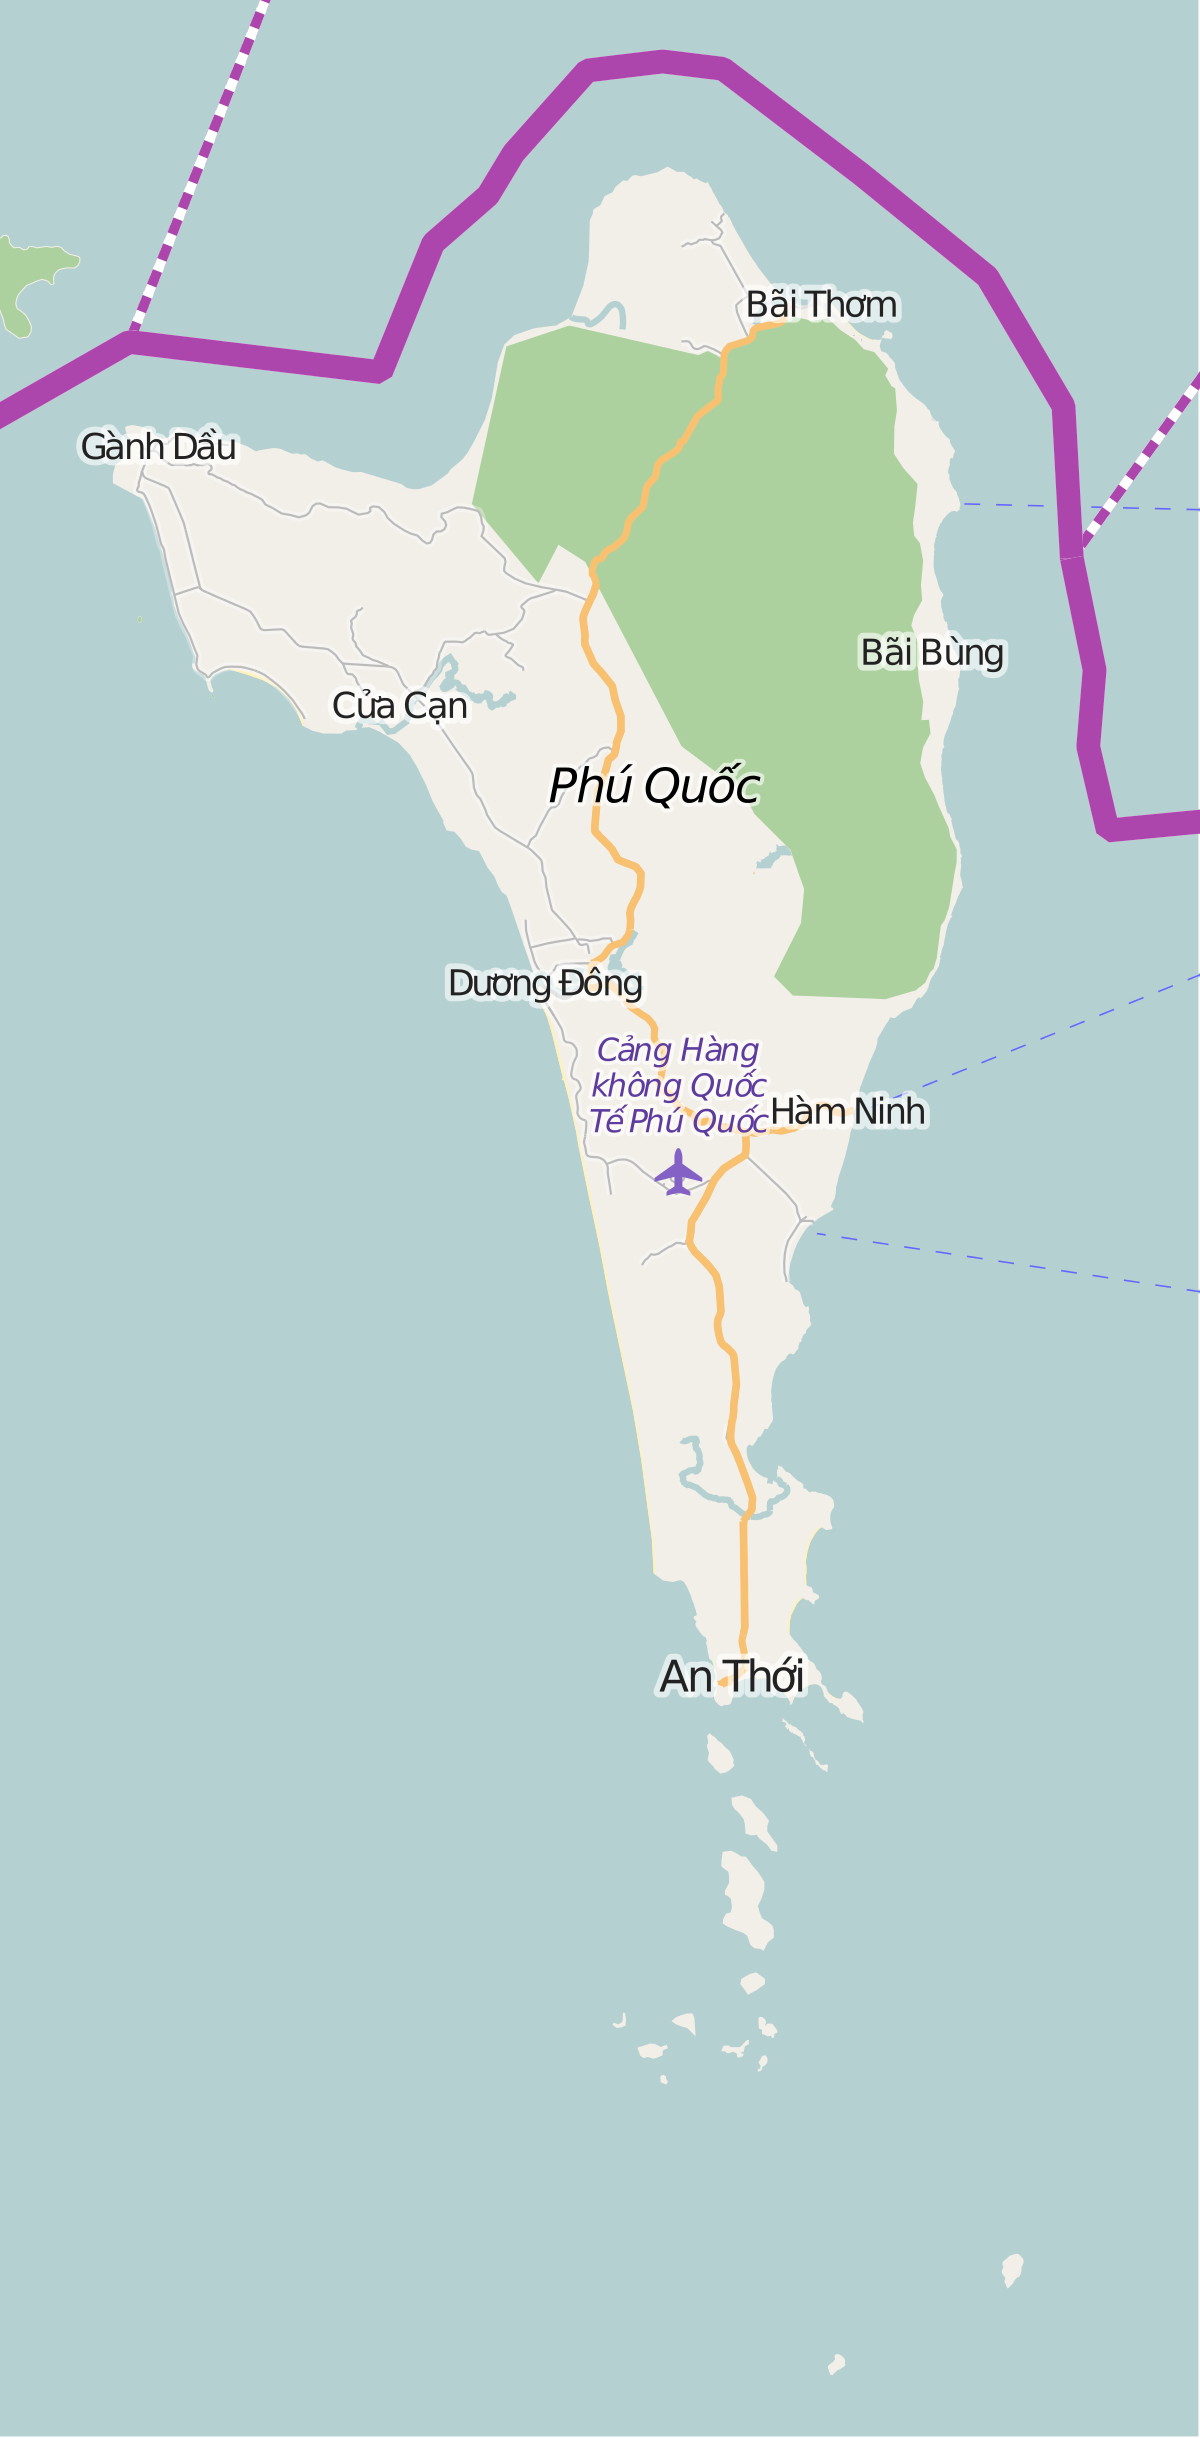 Cáp treo Hòn Thơm là một kỳ quan của Phú Quốc với tầm nhìn tuyệt đẹp trên từng chuyến tham quan. Với sự cập nhật liên tục trên Wikipedia tiếng Việt, bạn sẽ tìm thấy tất cả những thông tin cần thiết về cáp treo Hòn Thơm. Hãy đến và khám phá những trải nghiệm tuyệt vời này!